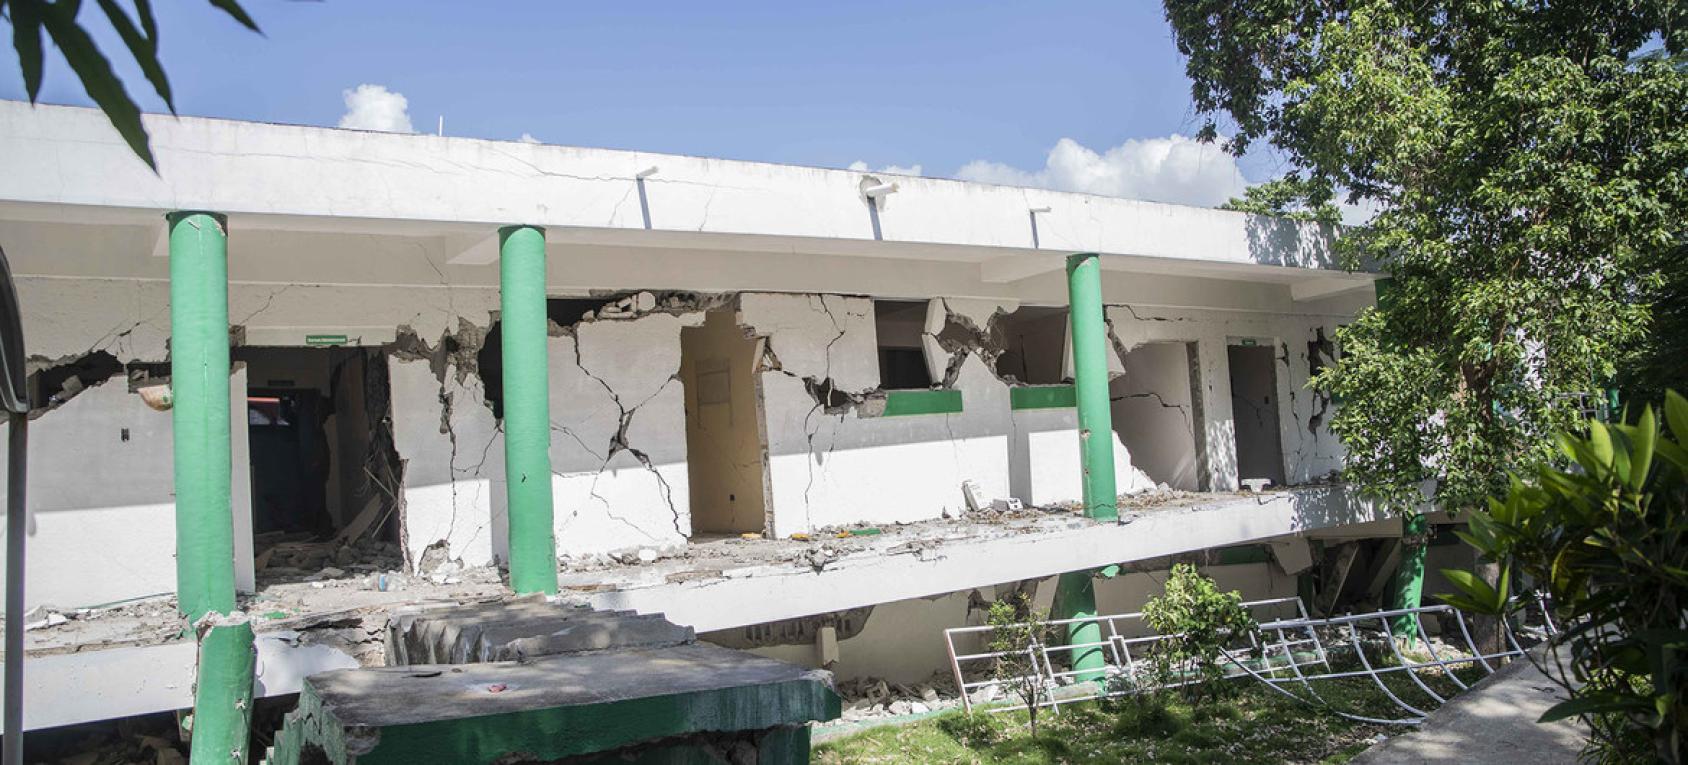 تُظهر الصورة الأضرار الهيكلية التي لحقت بمستشفى "ريفيرانس كومينوتير دو لازيل" في جنوب غرب هايتي بعد زلزال 14 أغسطس 2021.